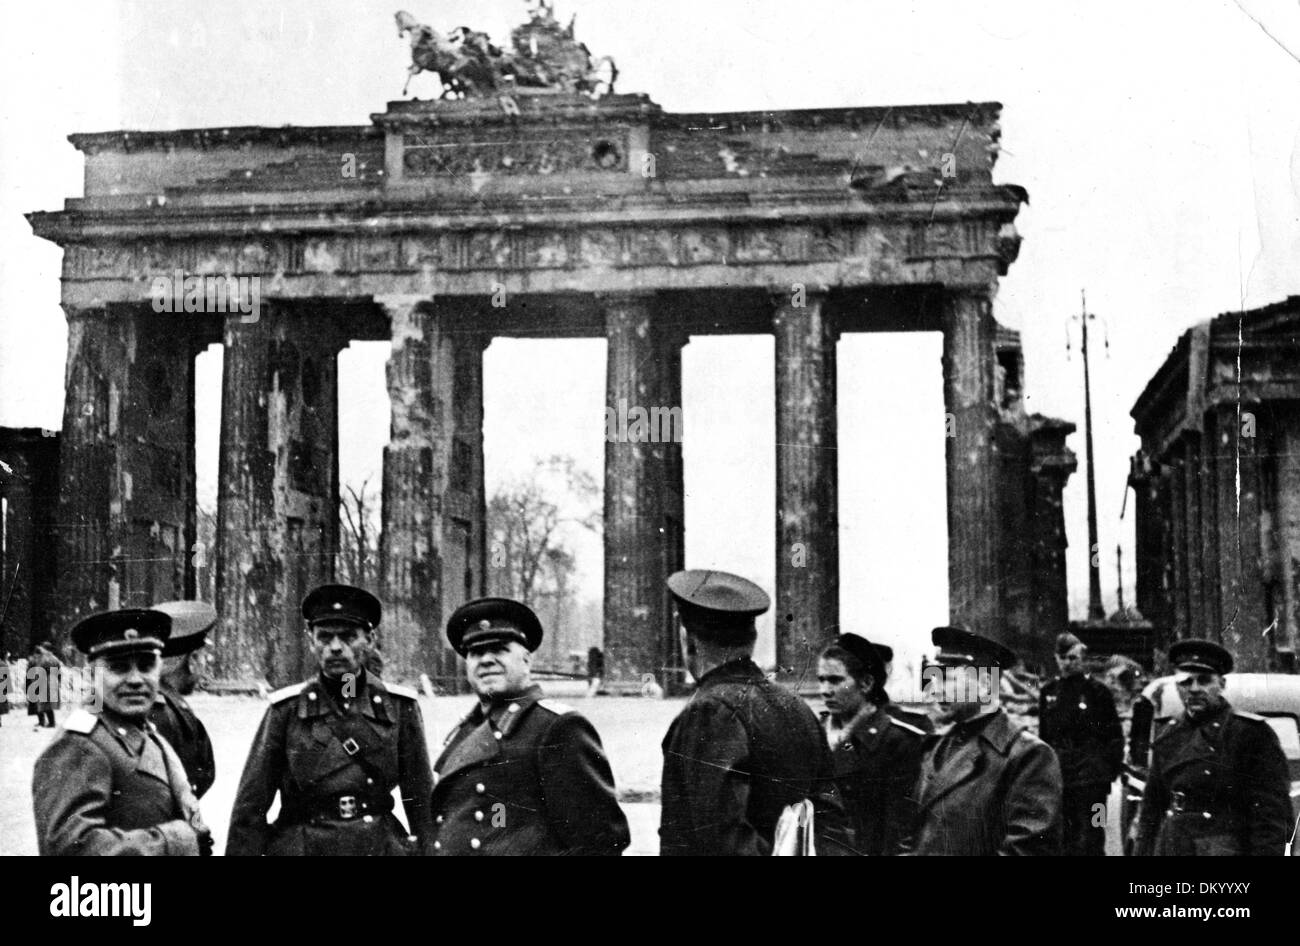 Ende des Krieges in Berlin im Jahr 1945 - Georgy Zhukov (l, sowjetischer Marschall), Arthur Pieck (2 l, Offizier der Roten Armee und Dolmetscher für Bersarin) und Nikolai Berzarin (3 l, erster sowjetischer Befehlshaber von Berlin) werden während einer Stadtbesichtigung vor dem Brandenburger Tor abgebildet. Fotoarchiv für Zeitgeschichte Stockfoto